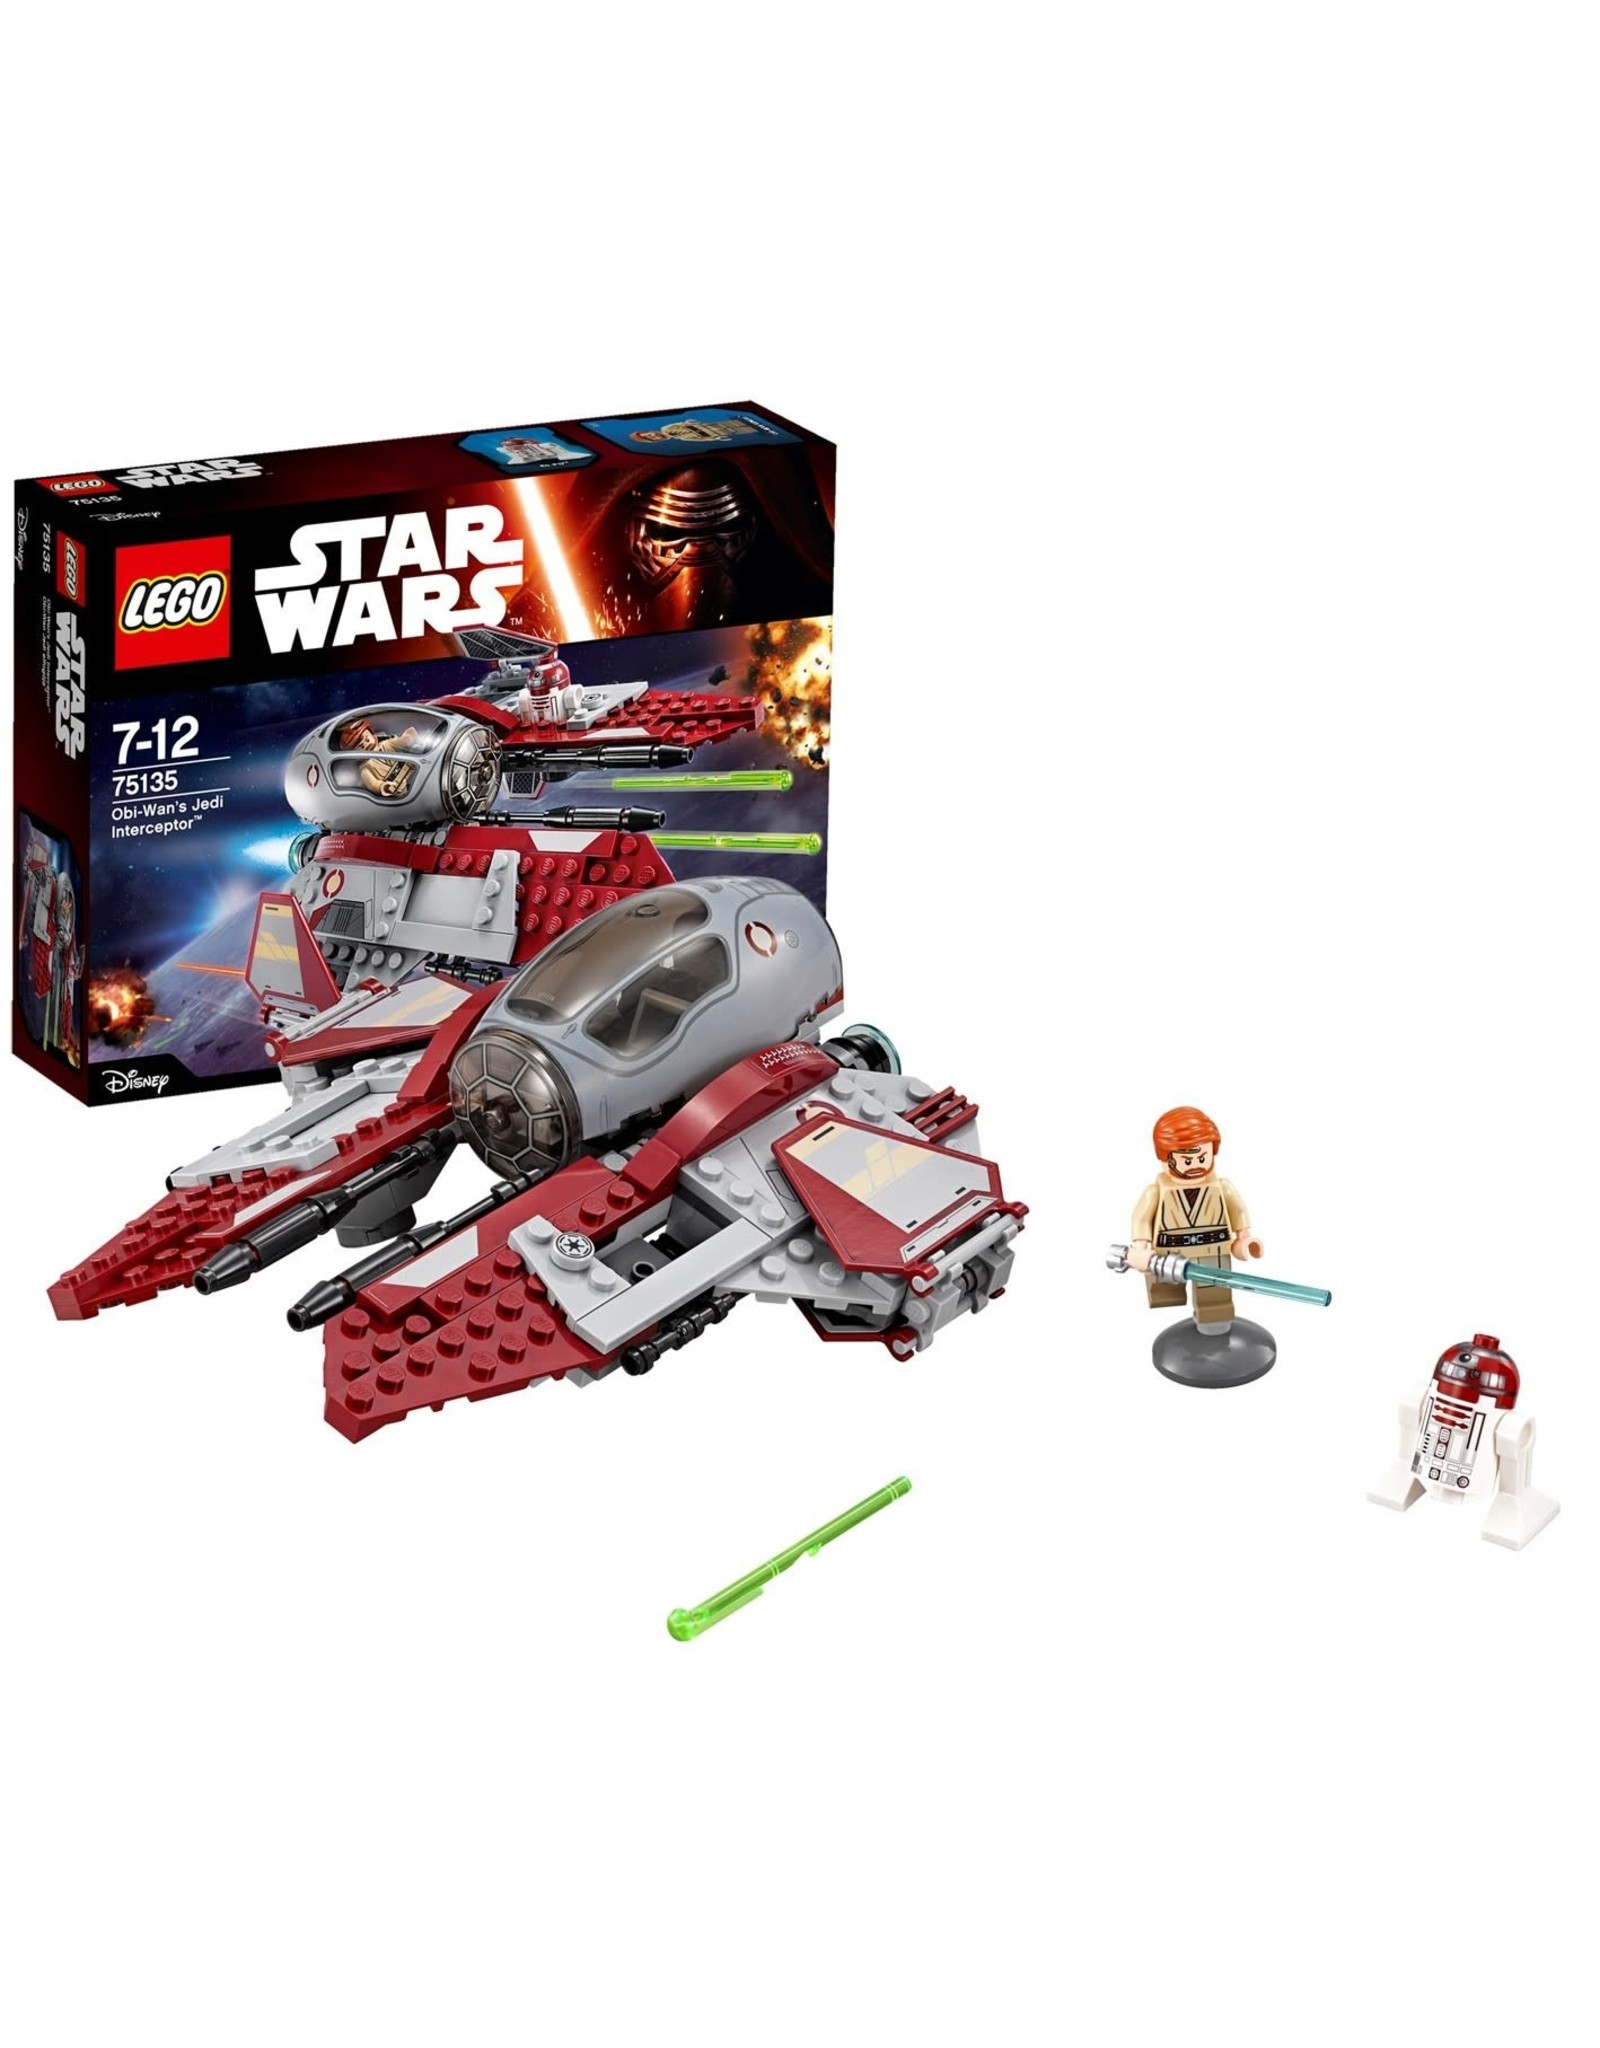 LEGO Lego Star Wars 75135 Obi-Wan’s Jedi Interceptor™